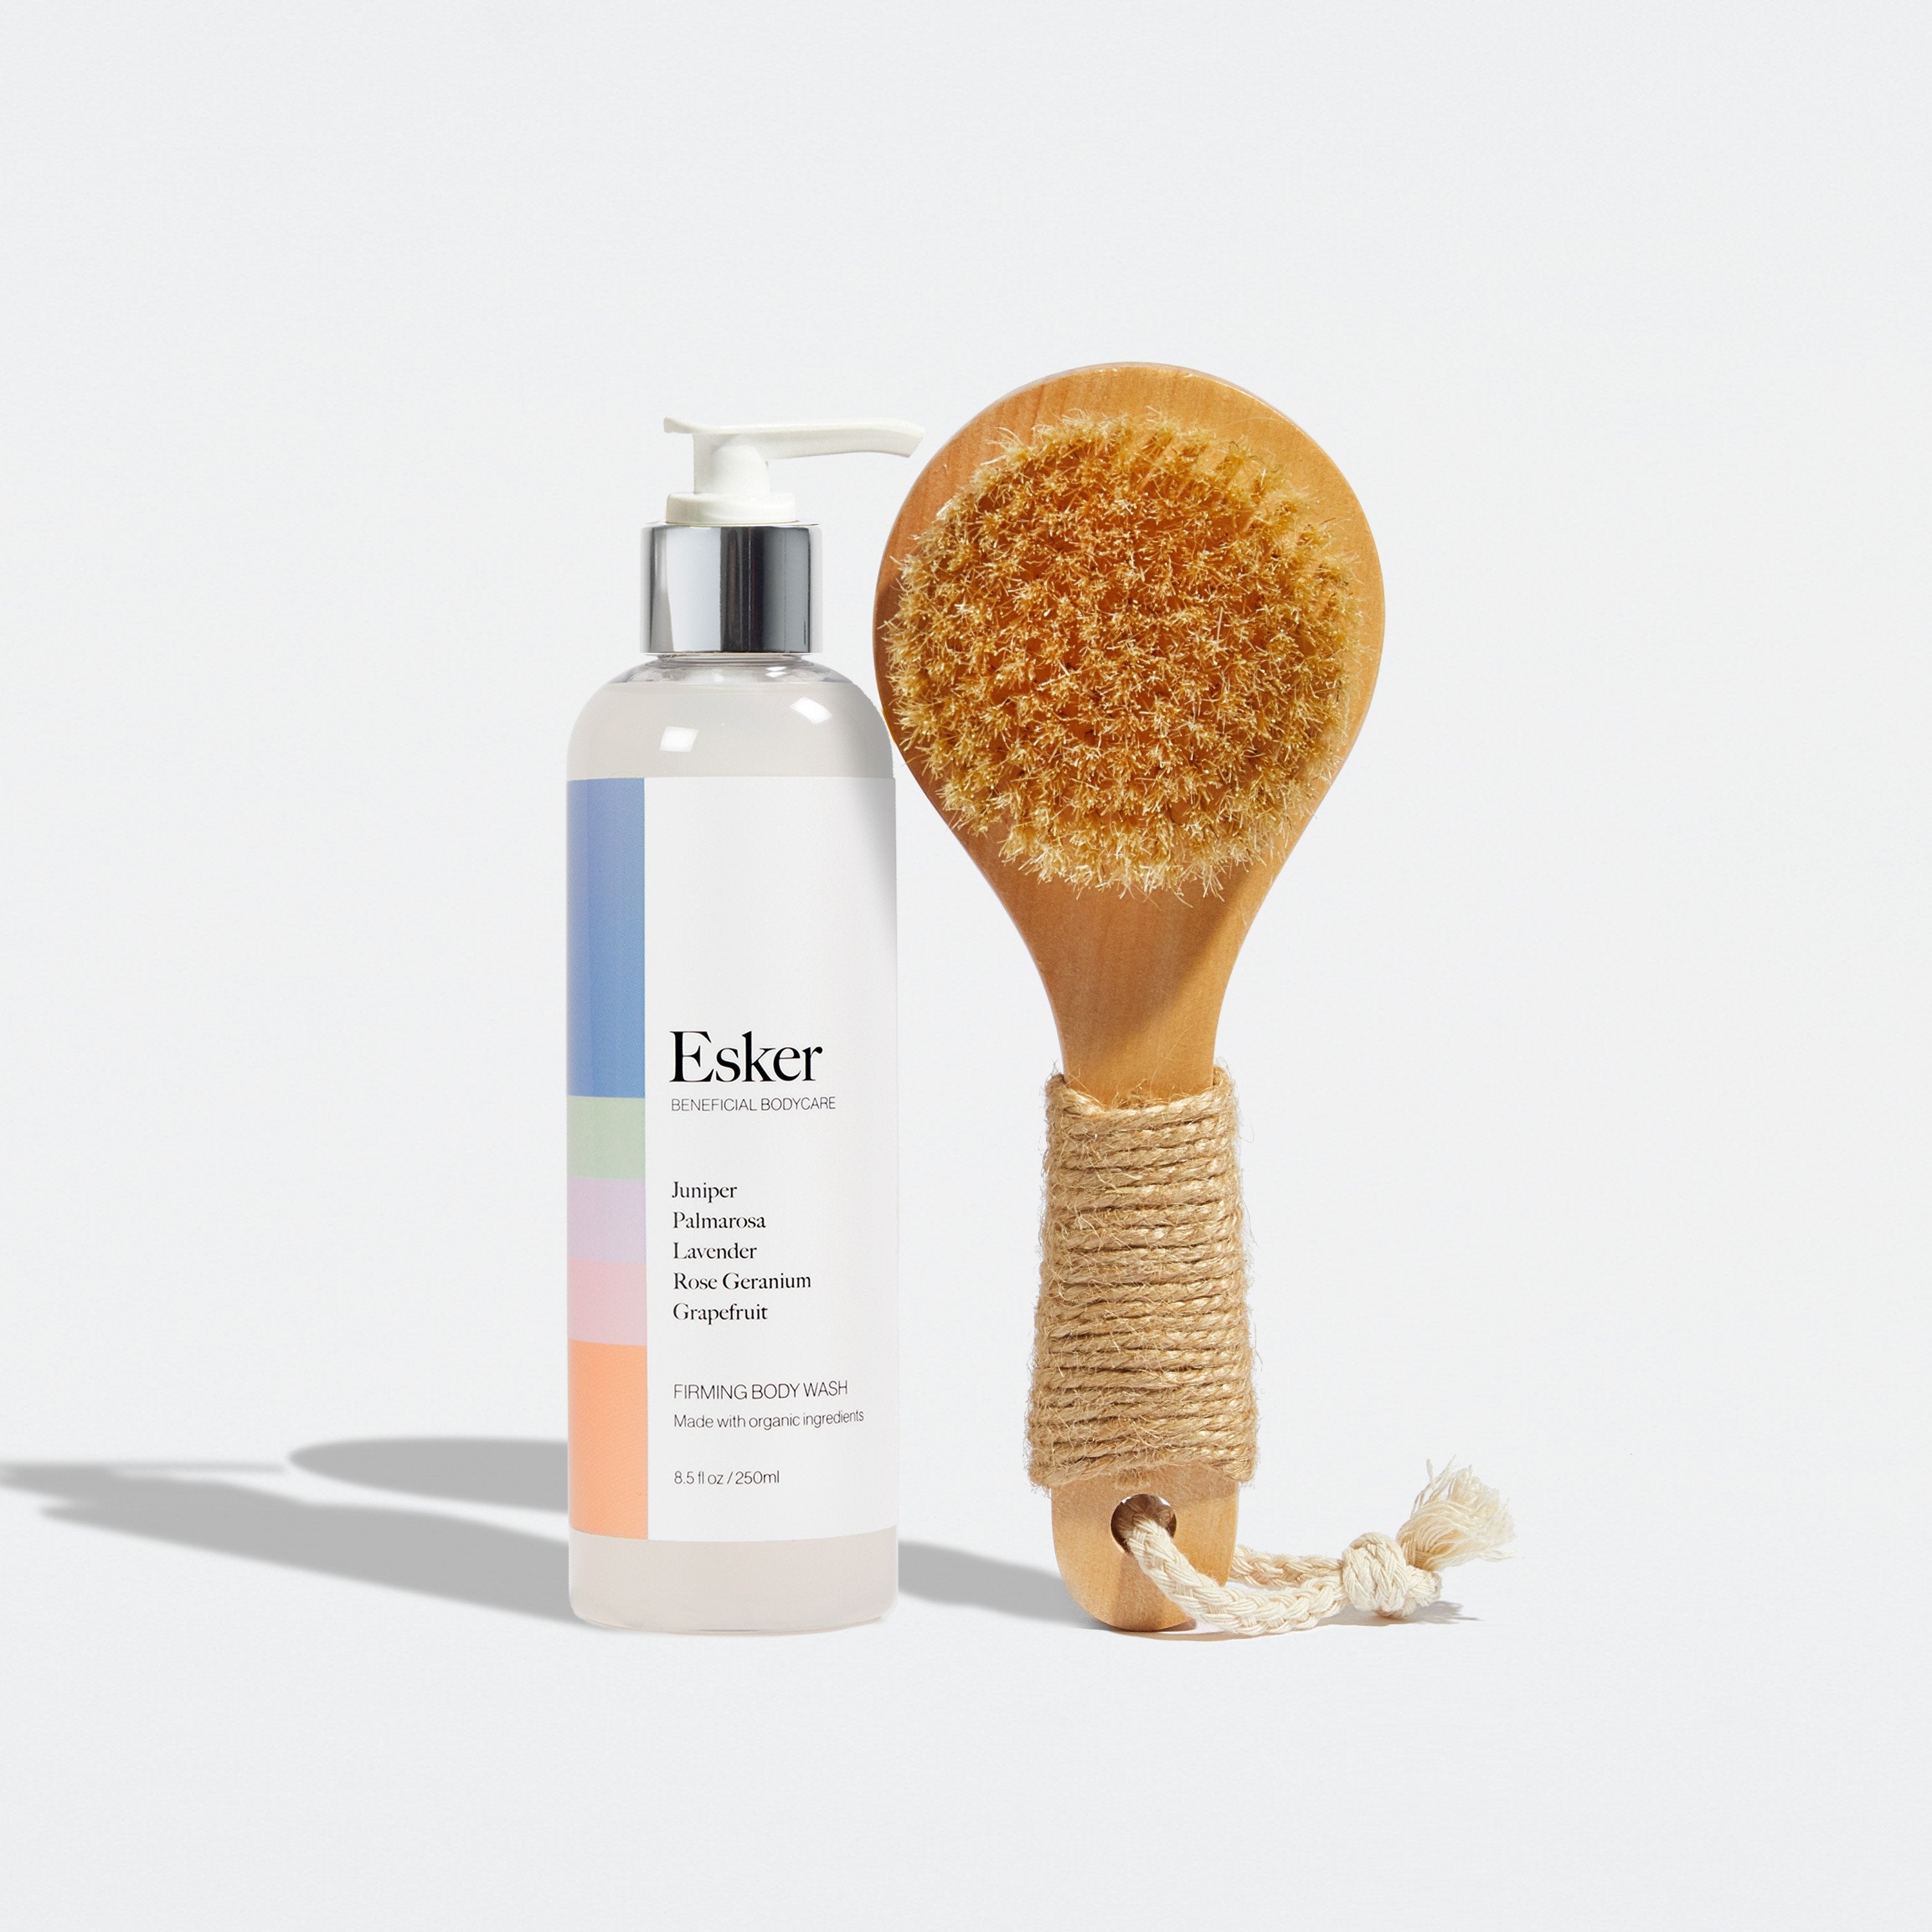  The Starter Bundle by Esker Esker Perfumarie